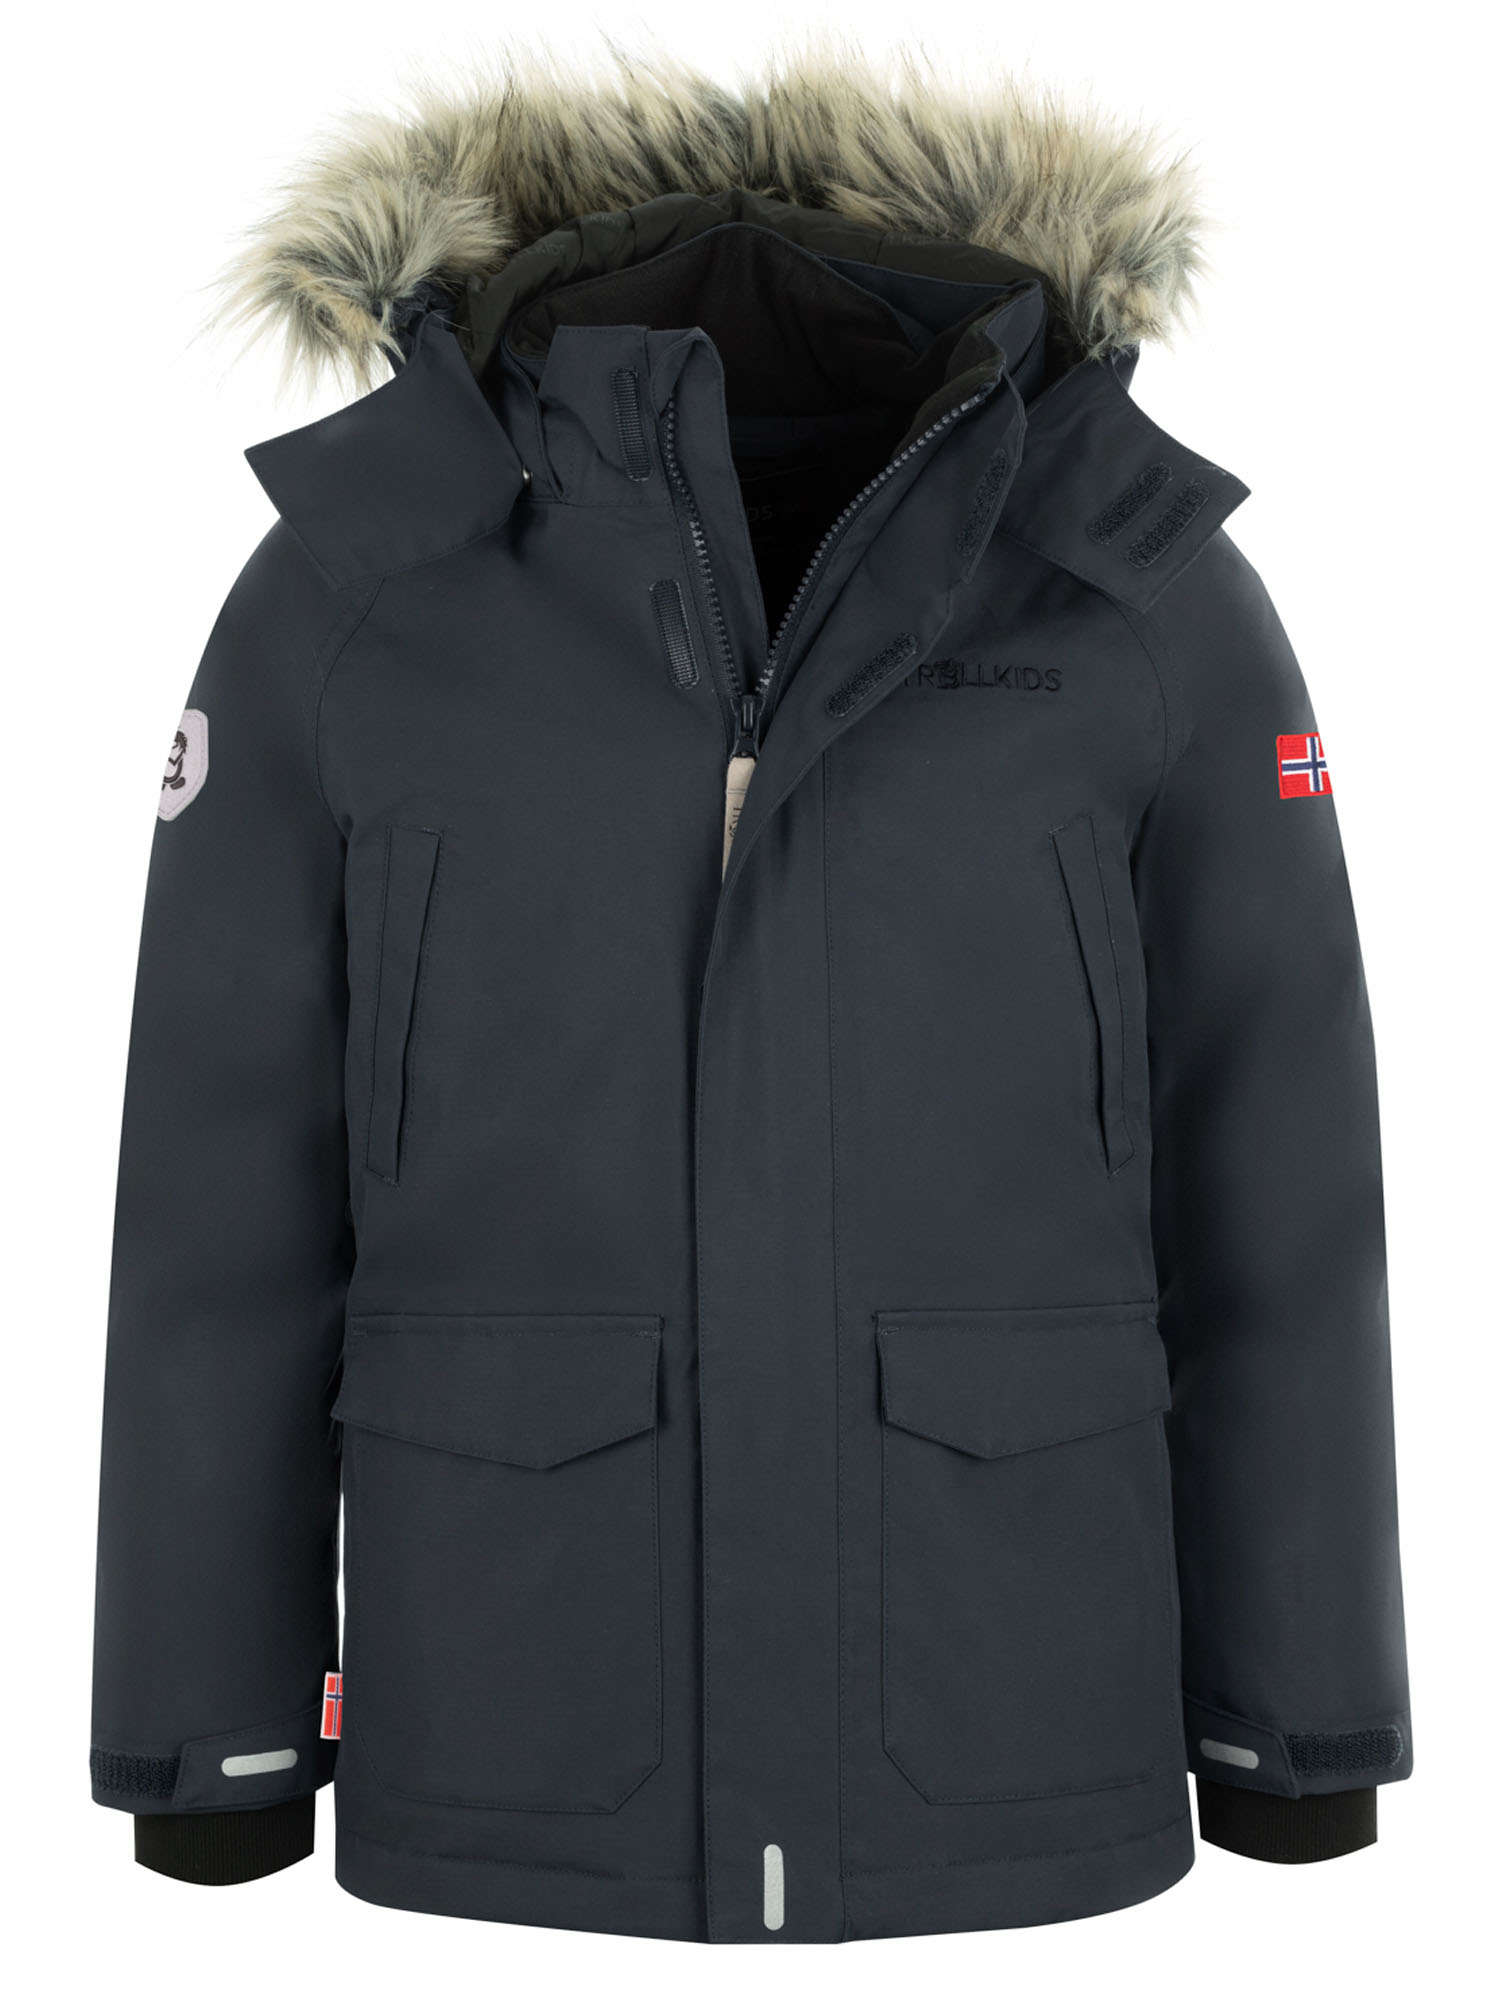 Куртка Детская Trollkids Spitsbergen Anthracite (Рост:152) куртка allsport vancouver 2219 anthracite